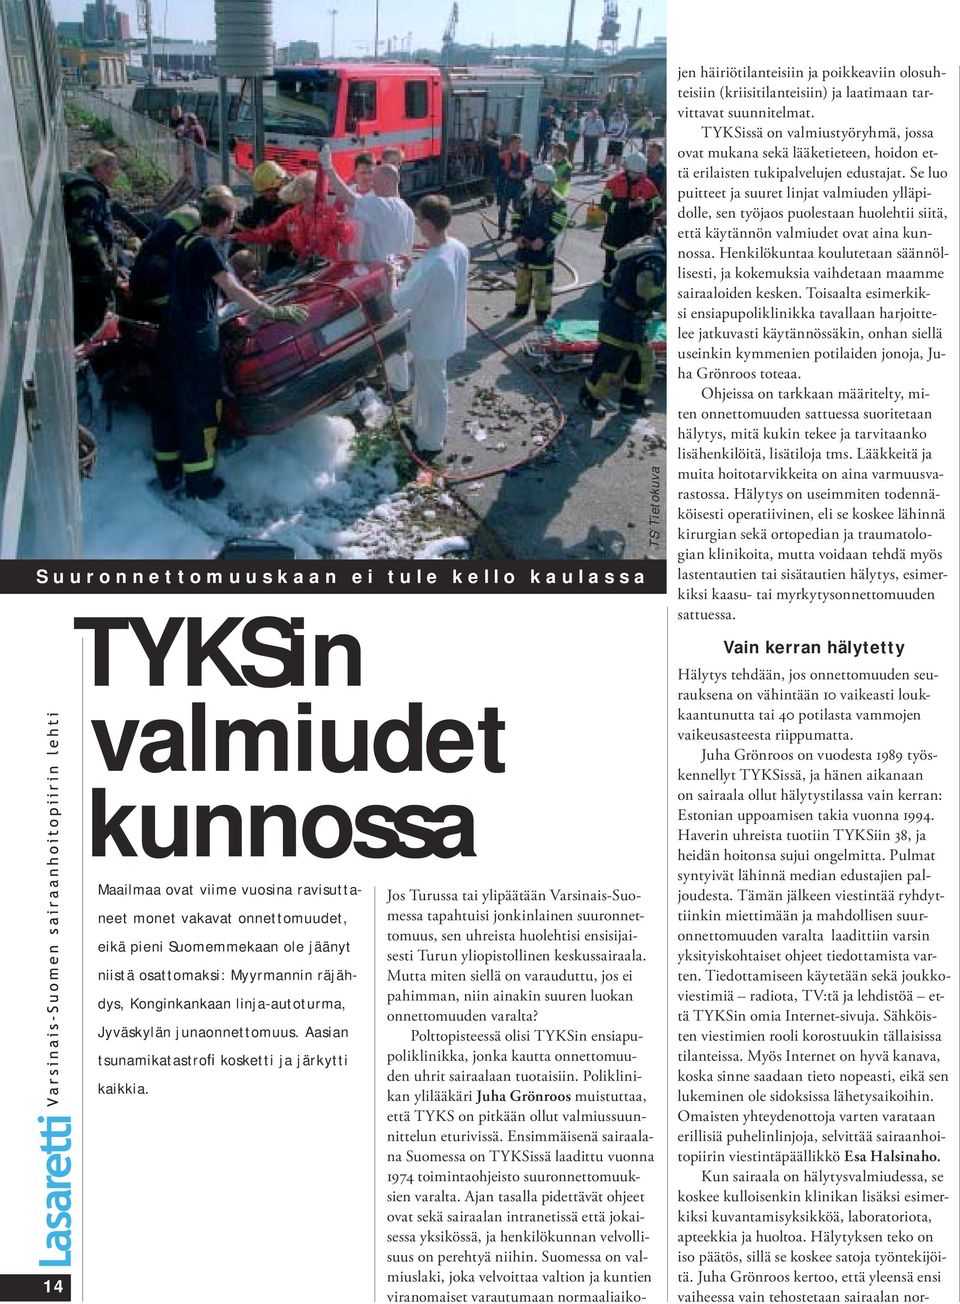 TS/Tietokuva Jos Turussa tai ylipäätään Varsinais-Suomessa tapahtuisi jonkinlainen suuronnettomuus, sen uhreista huolehtisi ensisijaisesti Turun yliopistollinen keskussairaala.